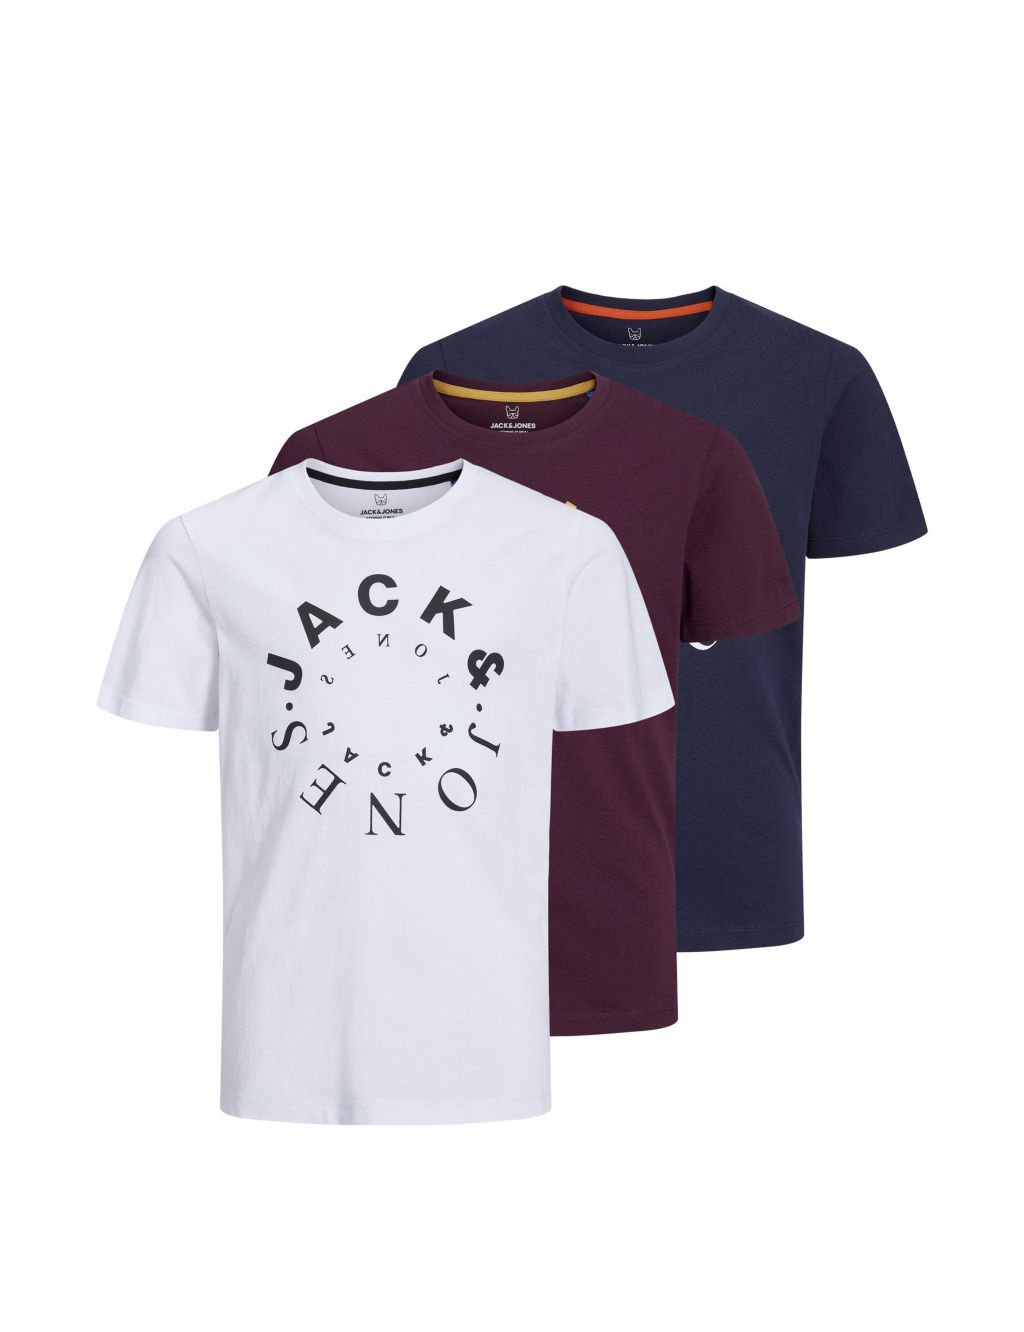 3pk Pure Cotton T-Shirts (8-16 Yrs) image 1